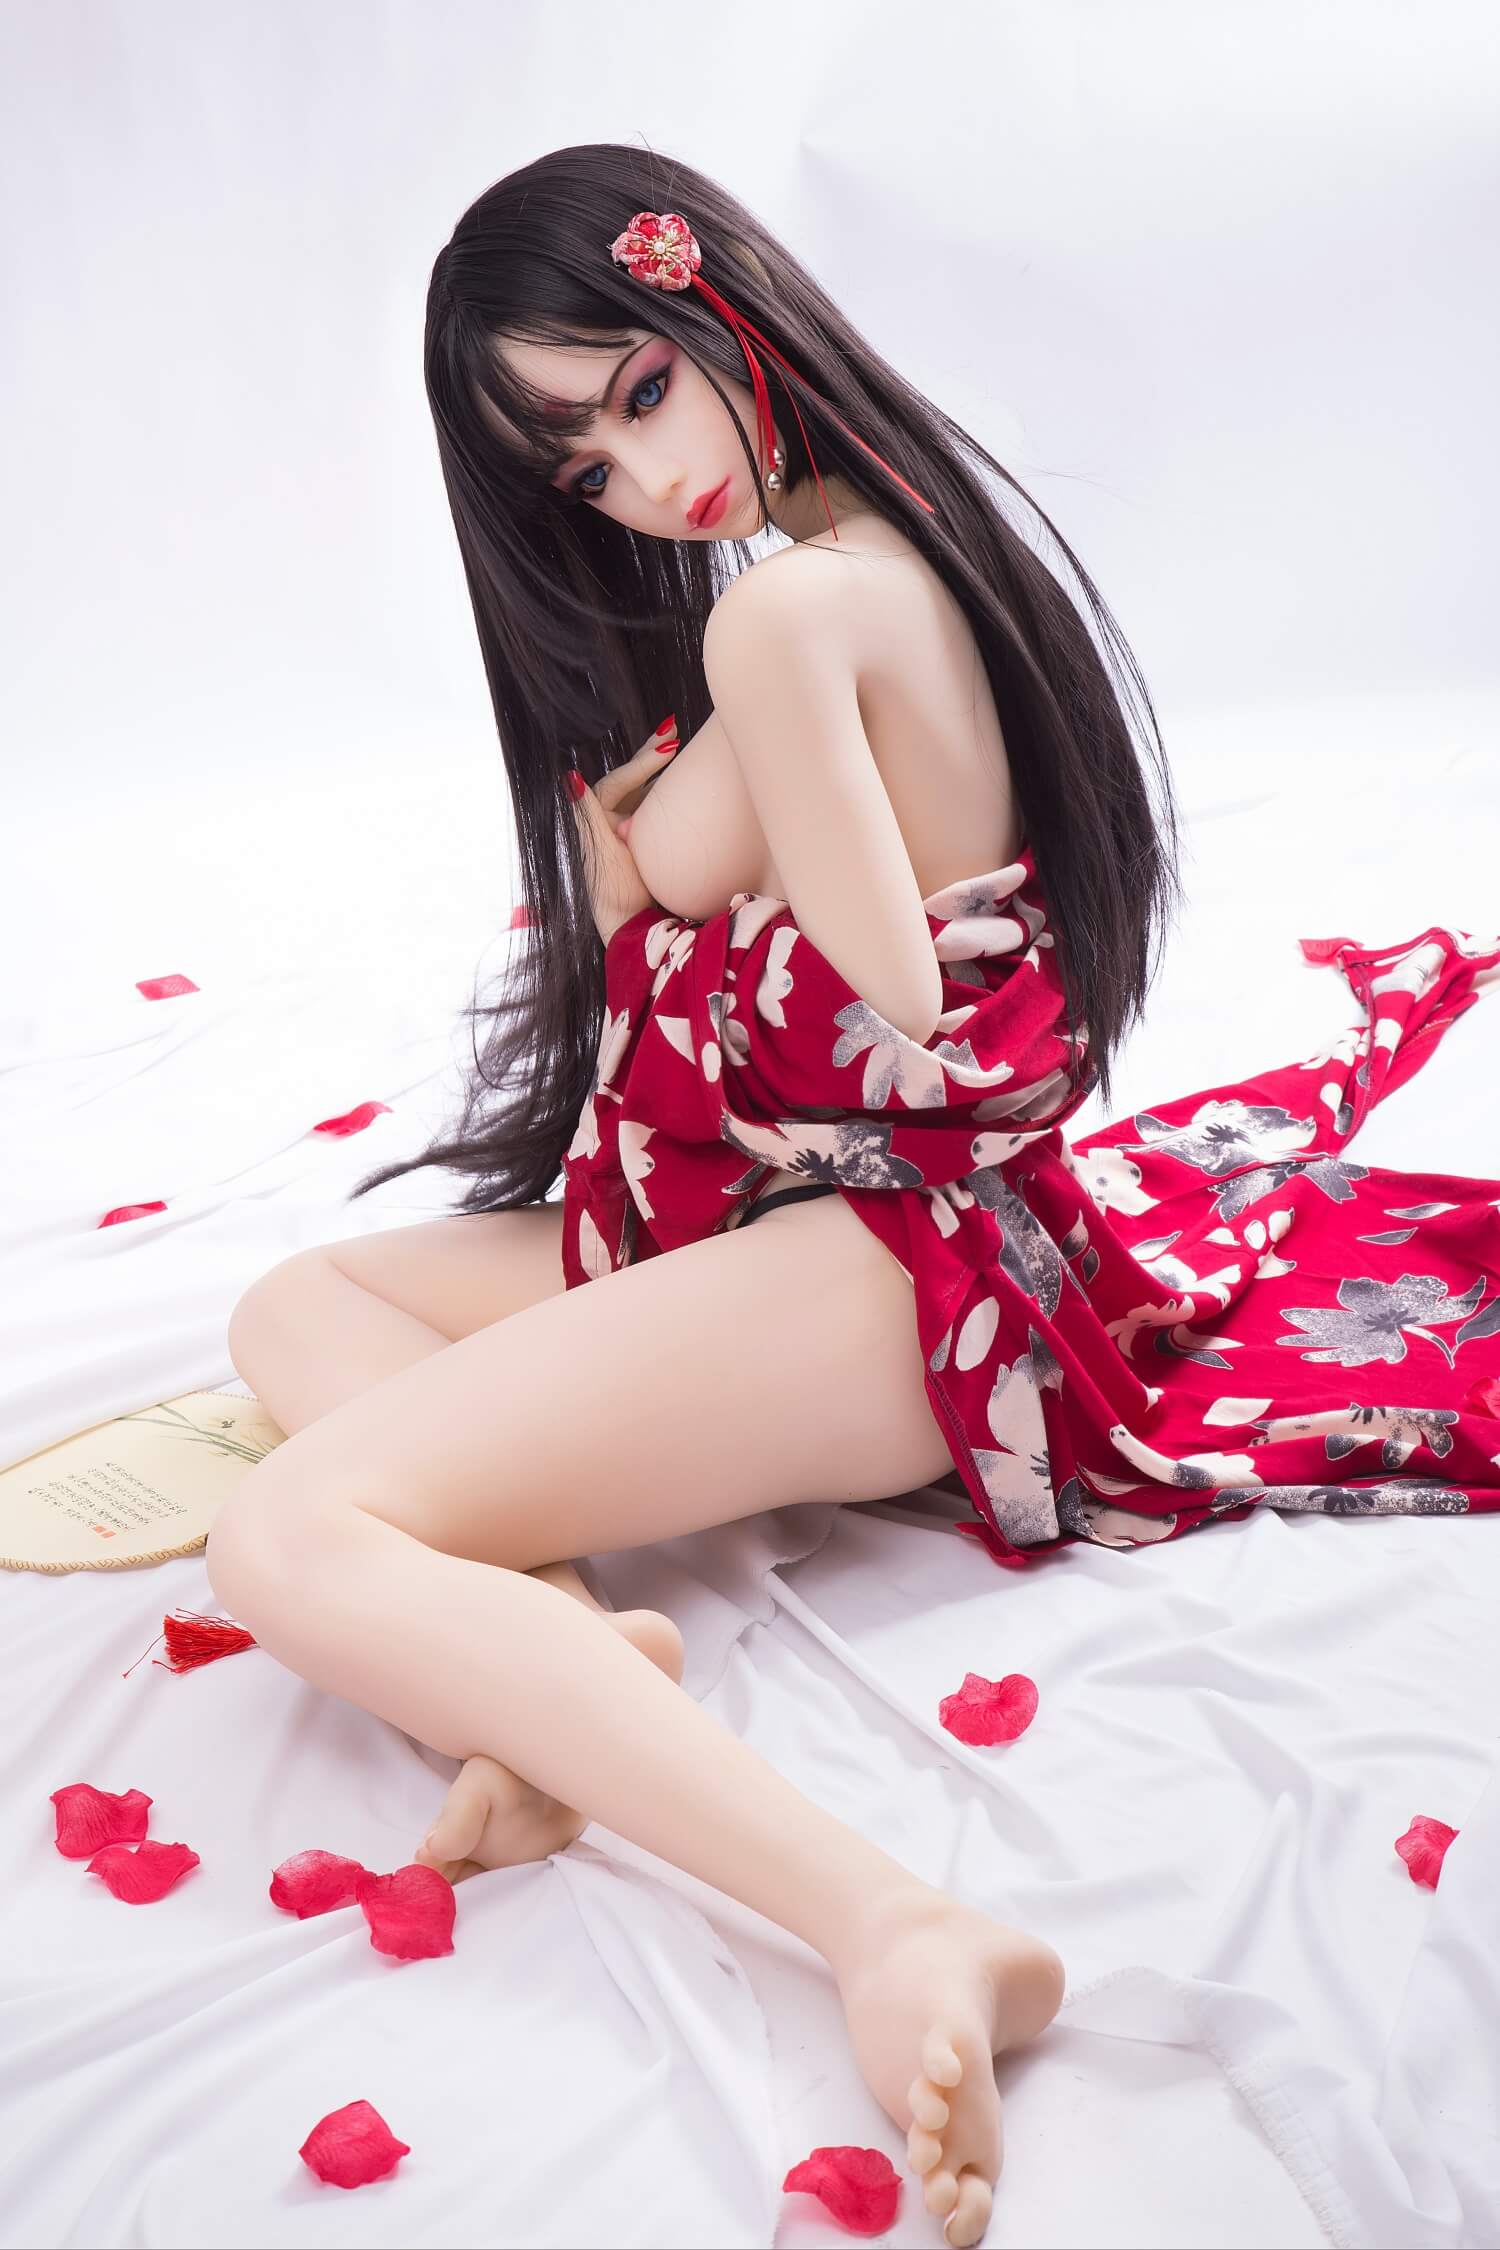 Sakura Sex Doll - Japanese girl Sex Toys